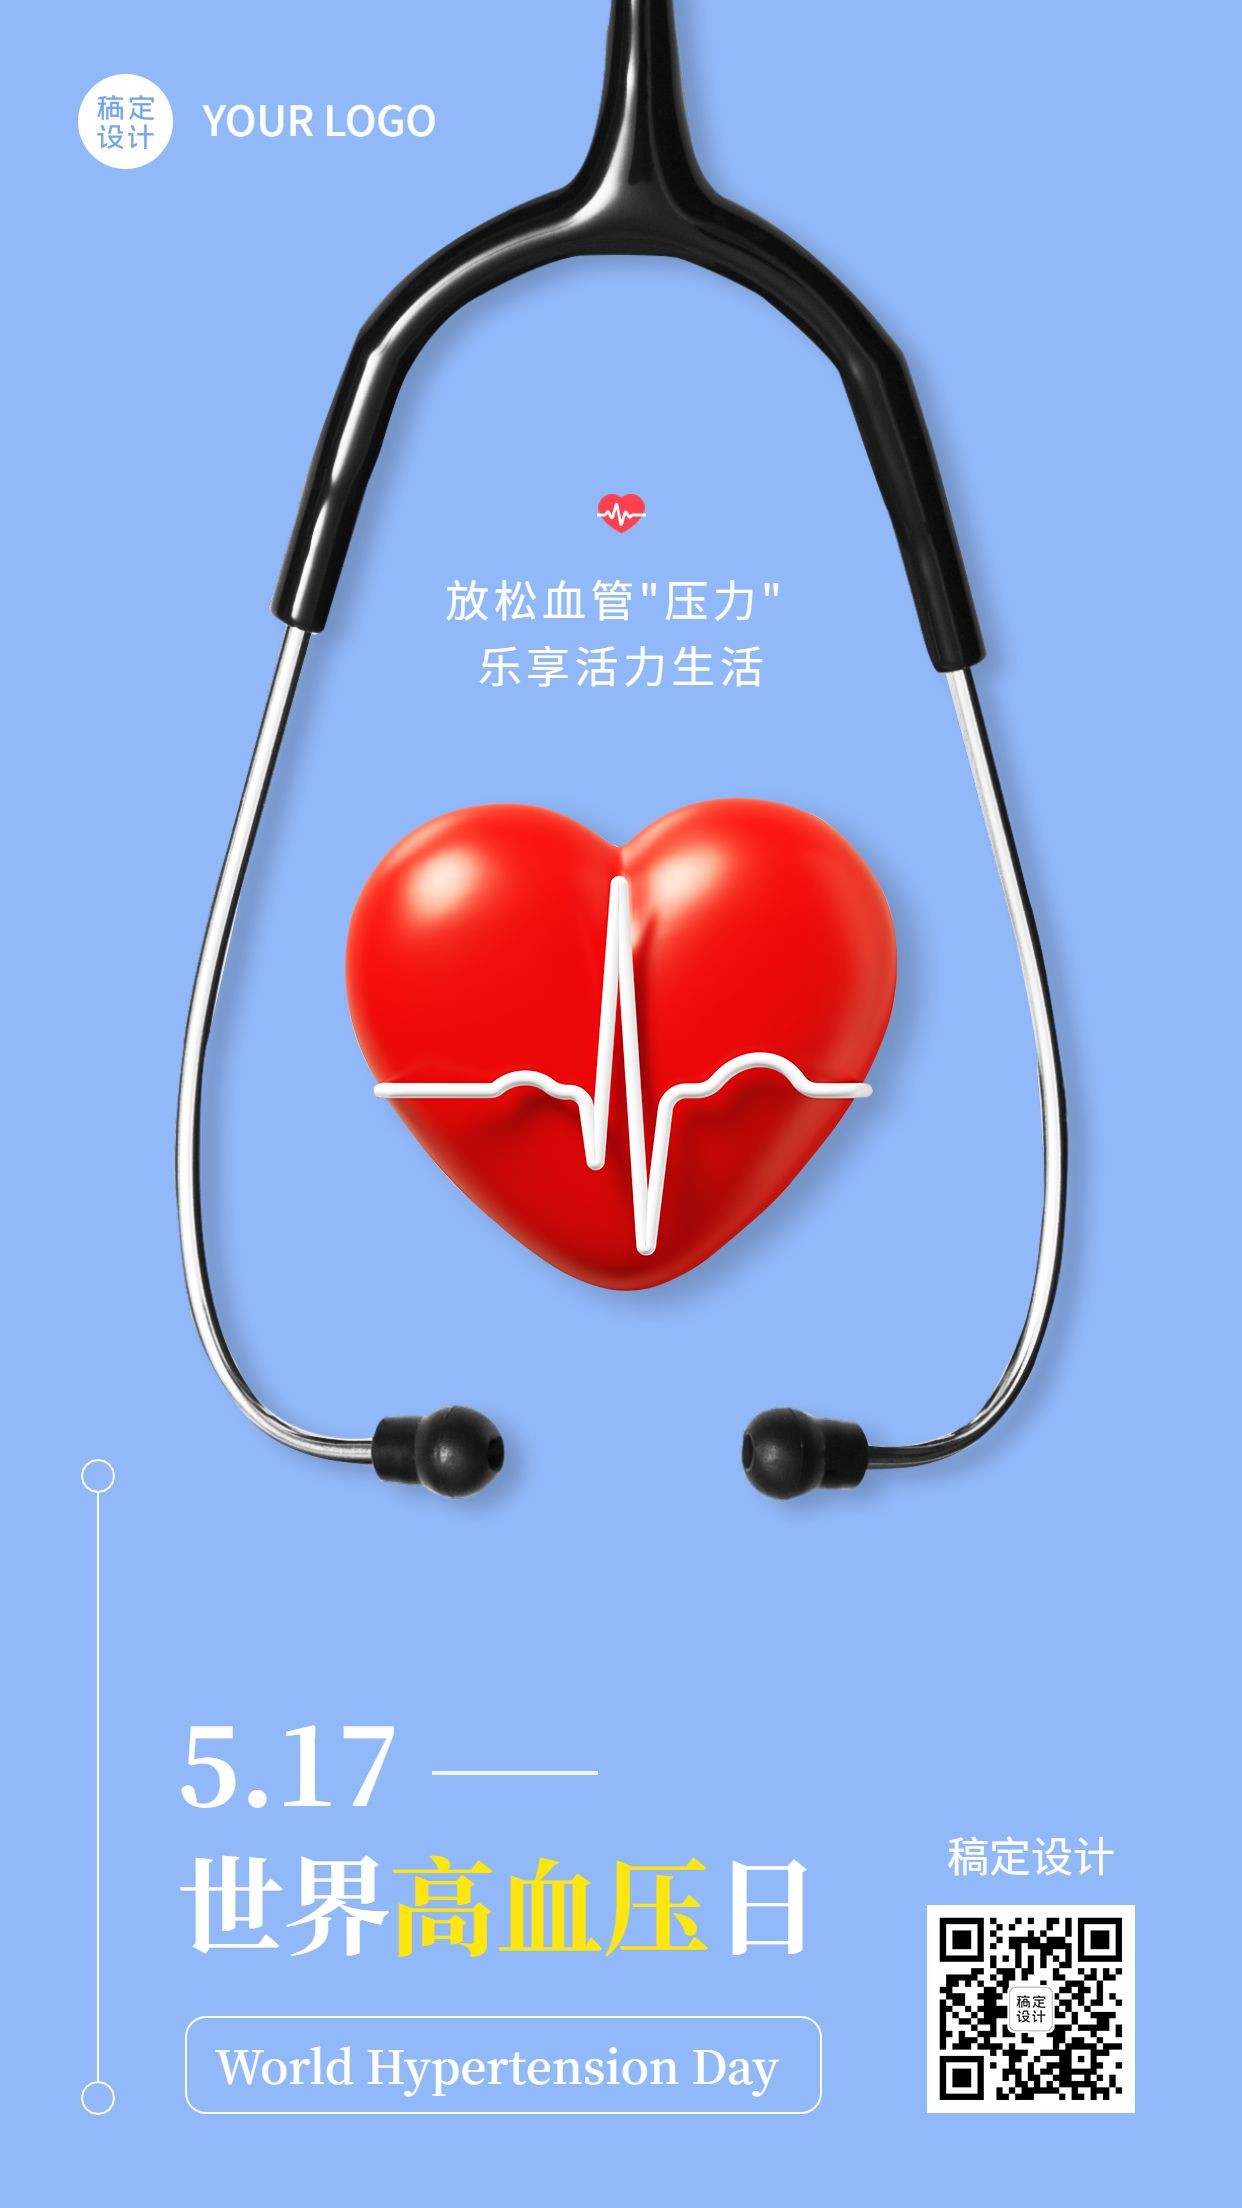 世界高血压日节日宣传手机海报预览效果